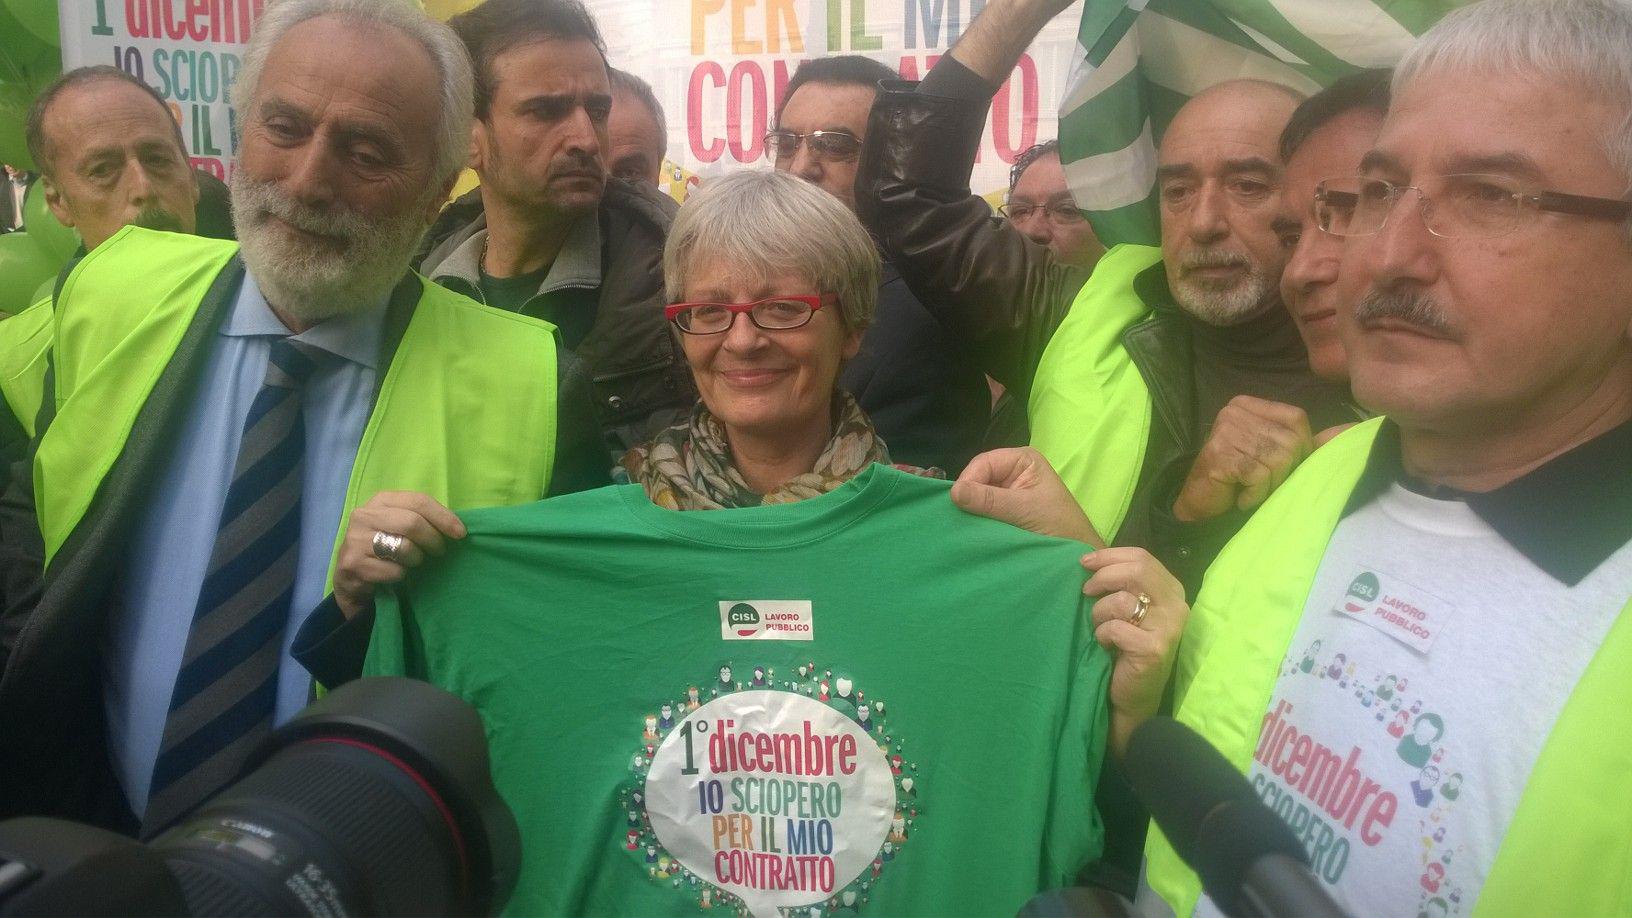 Annamaria Furlan, segretario generale della Cisl, posa con la maglietta della protesta dei lavoratori del pubblico impiego al termine del suo intervento sul palco (Adnkronos)